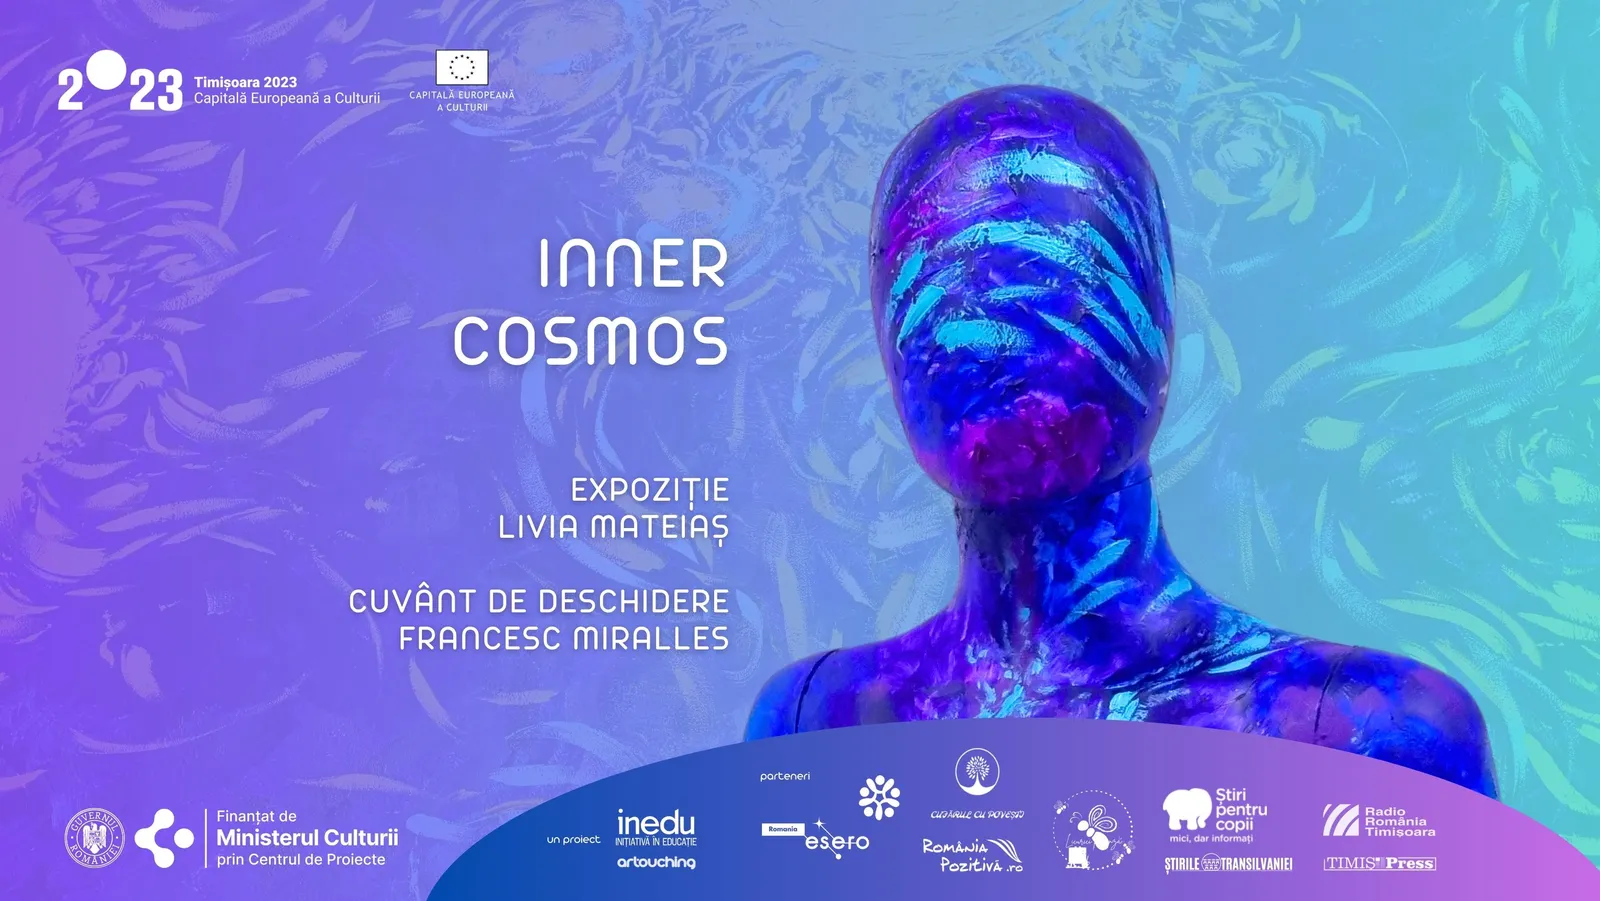 Vernisaj Inner Cosmos: expoziție Livia Mateiaș